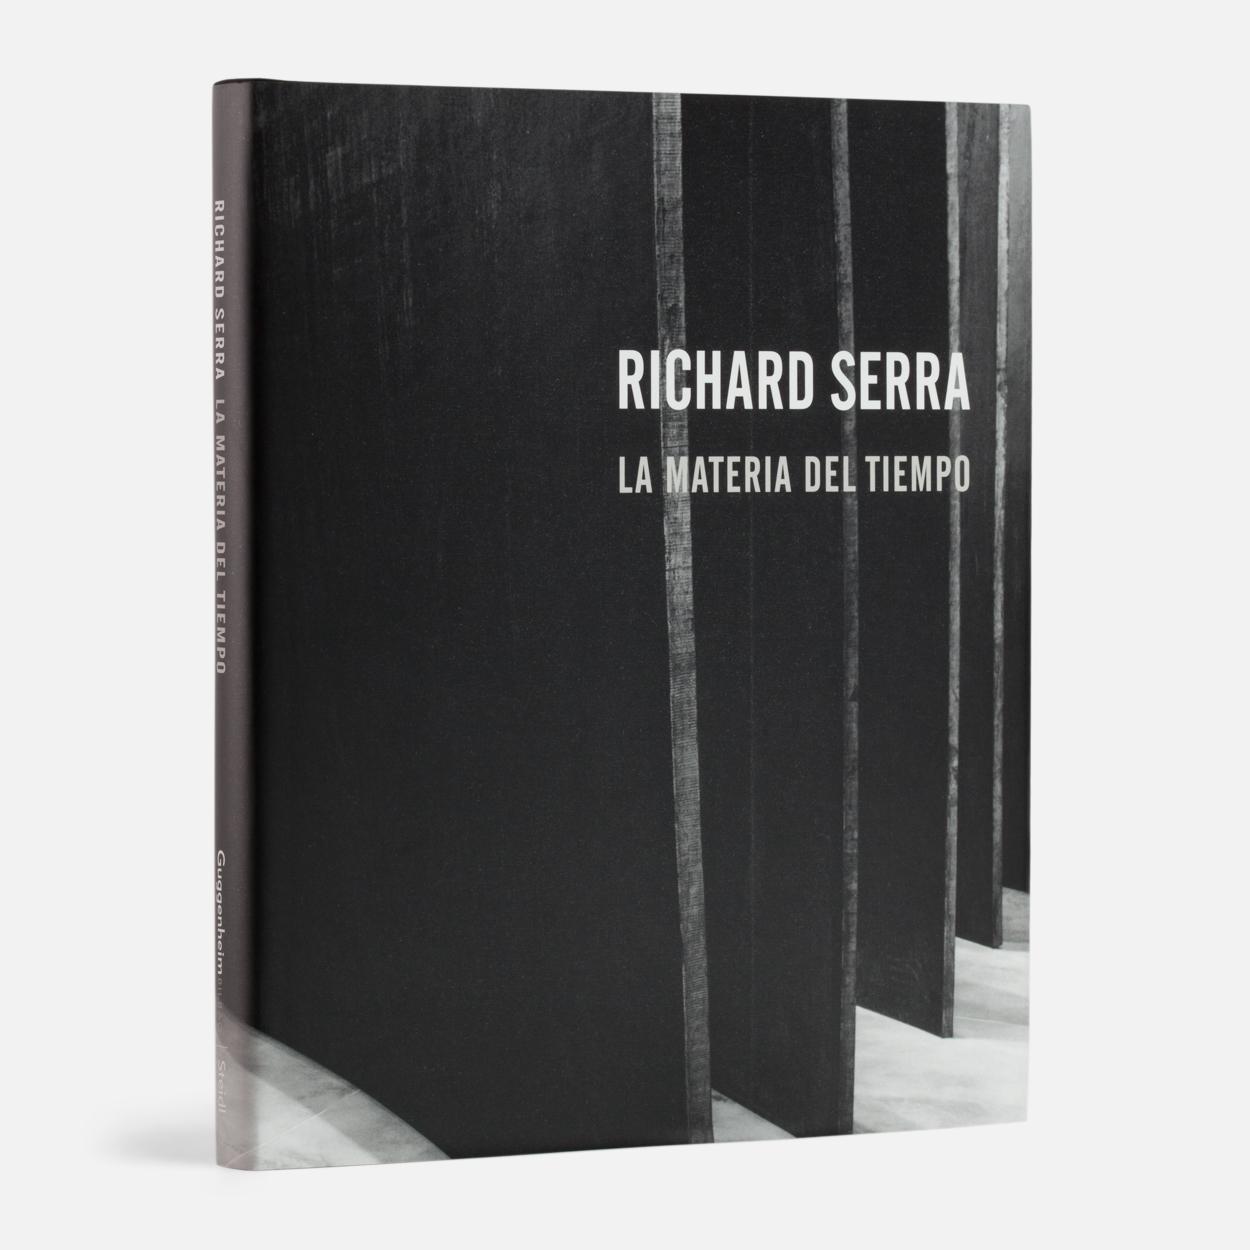 Richard Serra: La Materia del Tiempo